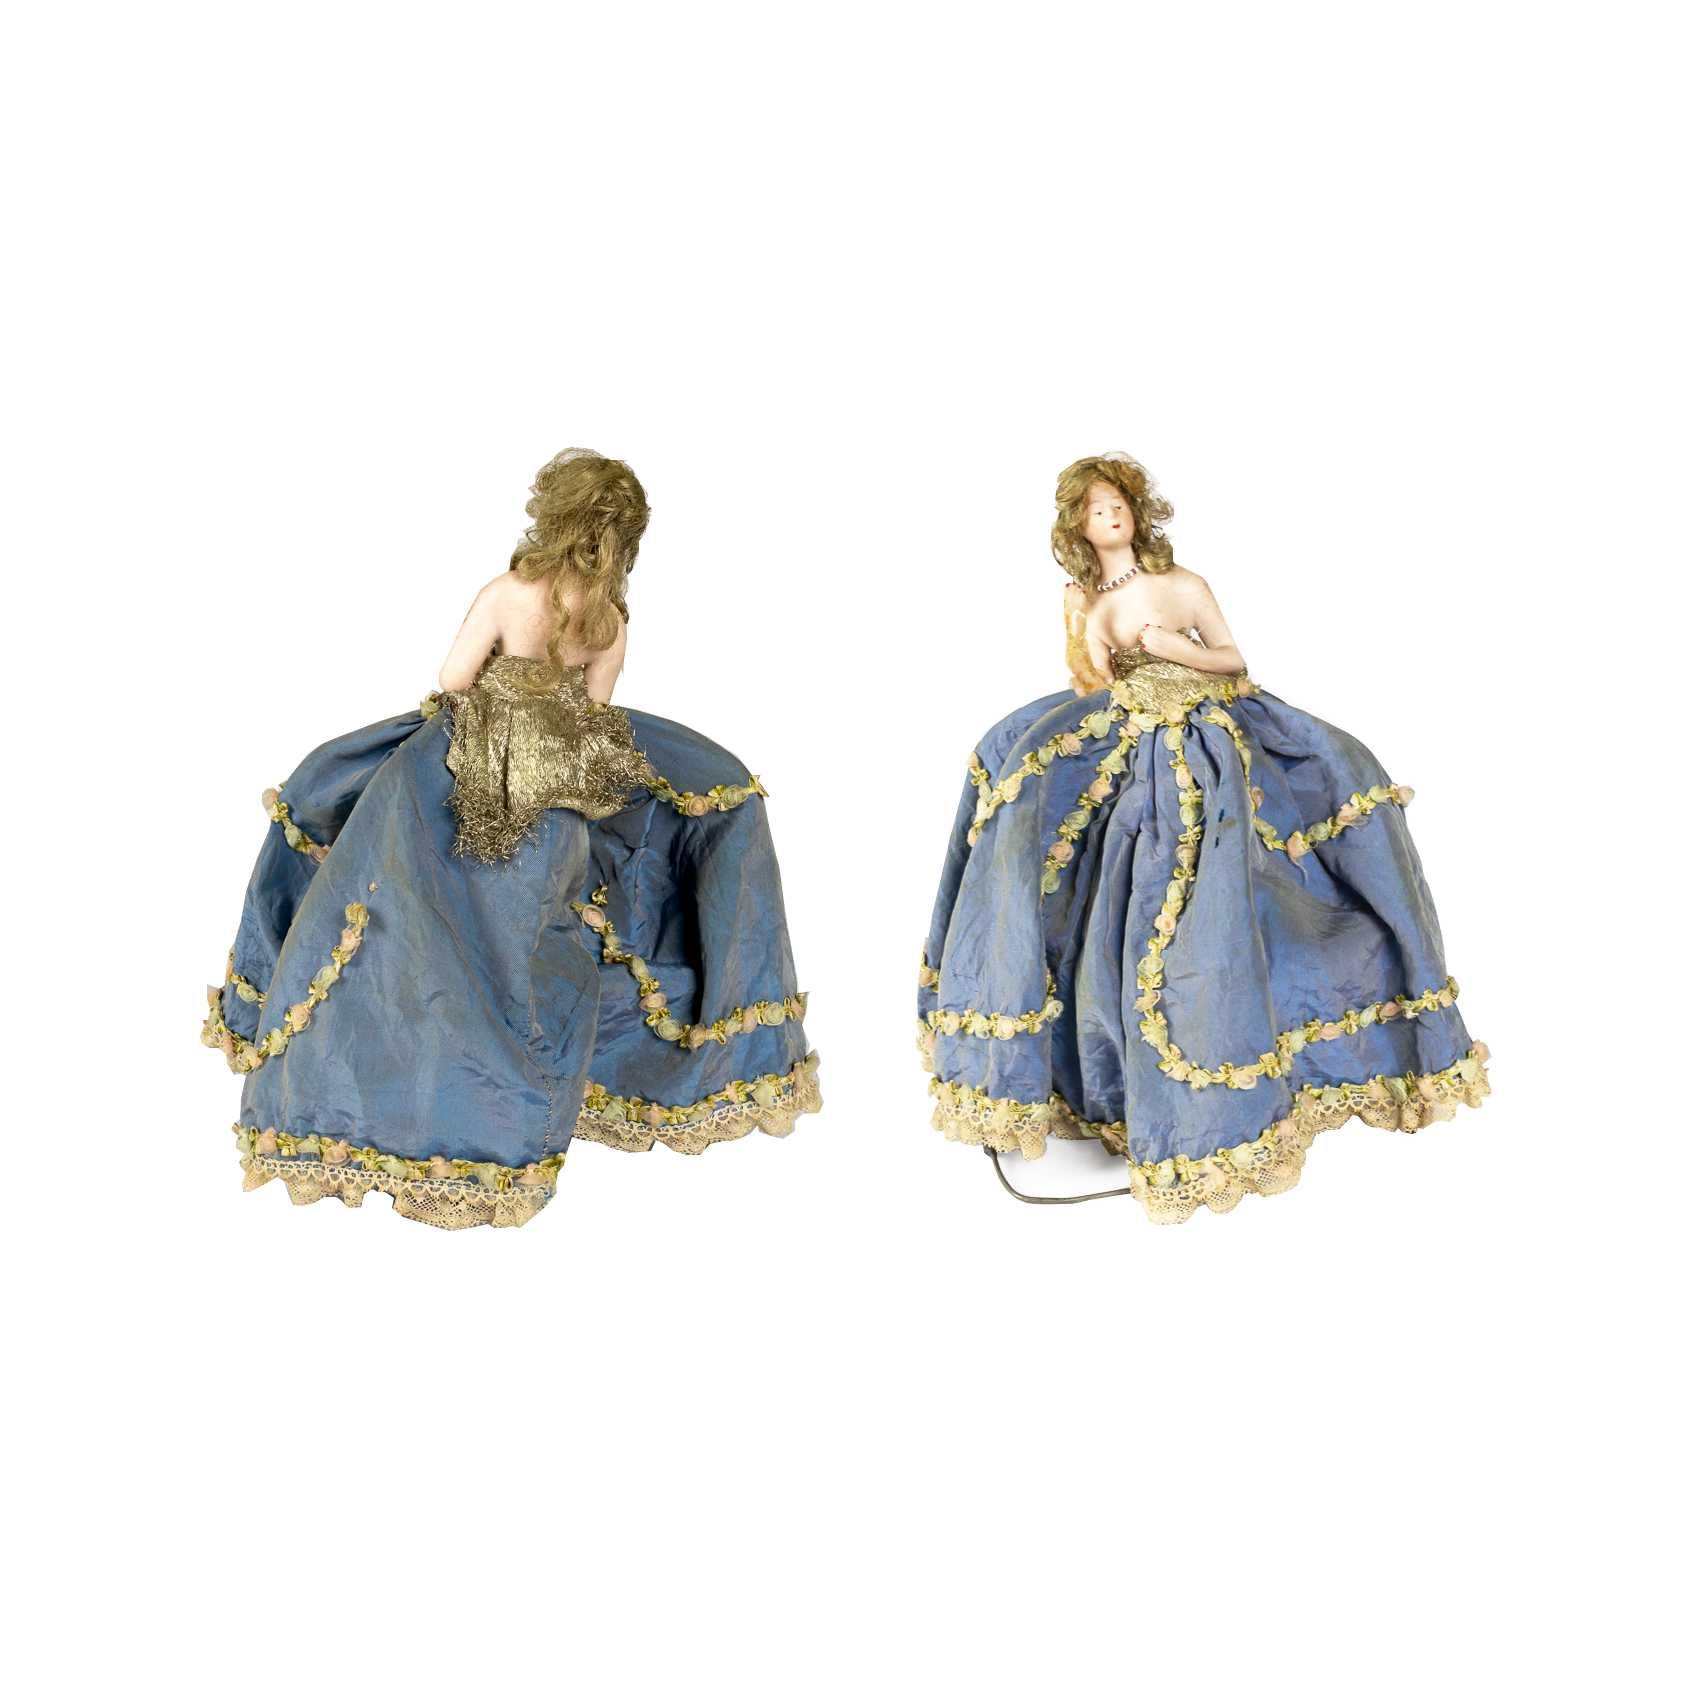 Boneca porcelana vestido azul Maria Antonieta Arte Nova | 1925